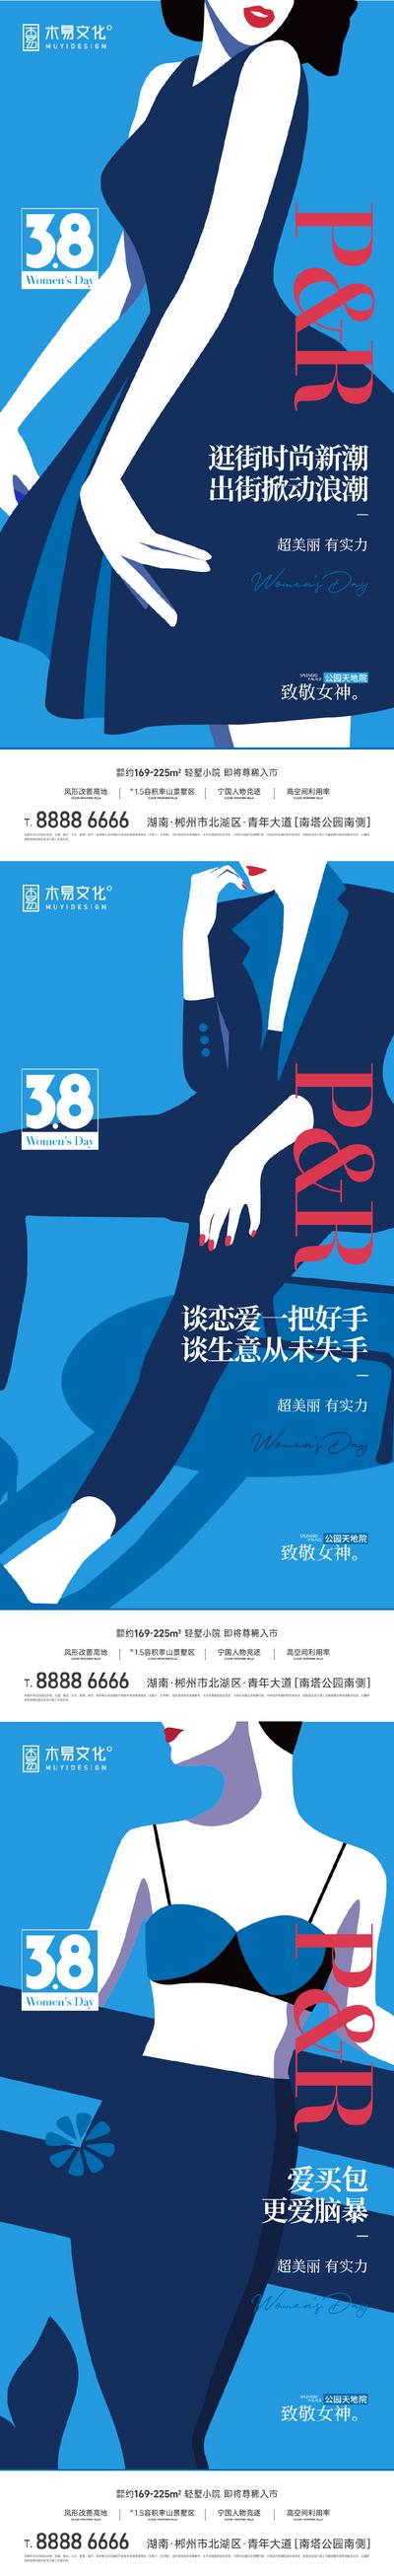 南门网 海报 房地产 公历节日 三八 女神节 妇女节 插画 系列